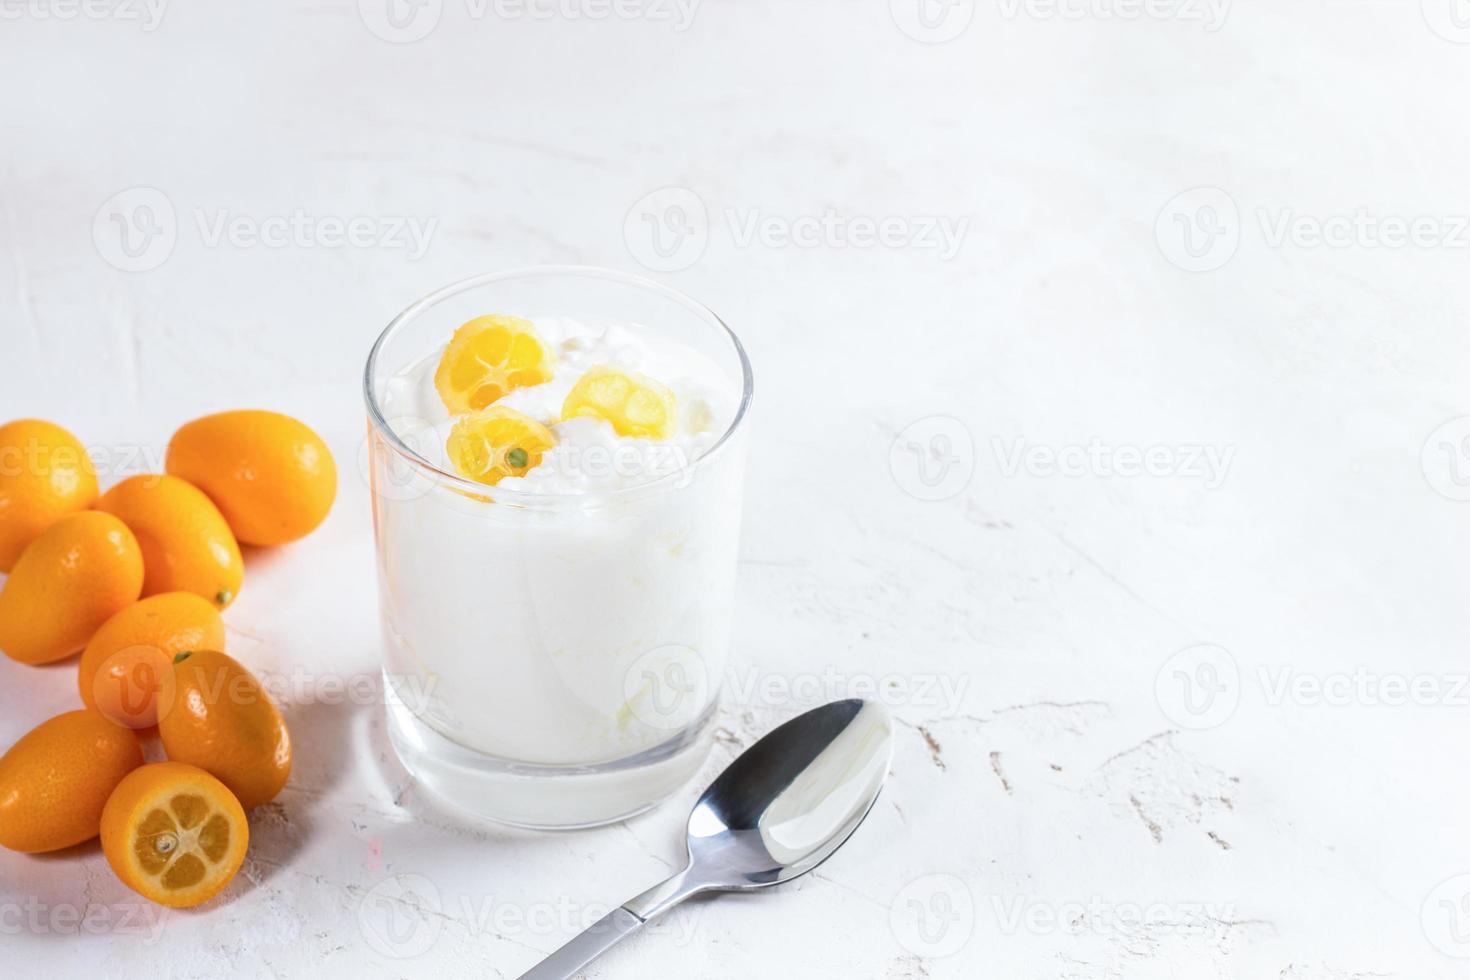 yogur blanco con rodajas de kumquat en vidrio, frutas enteras y cuchara metálica sobre fondo blanco. foto